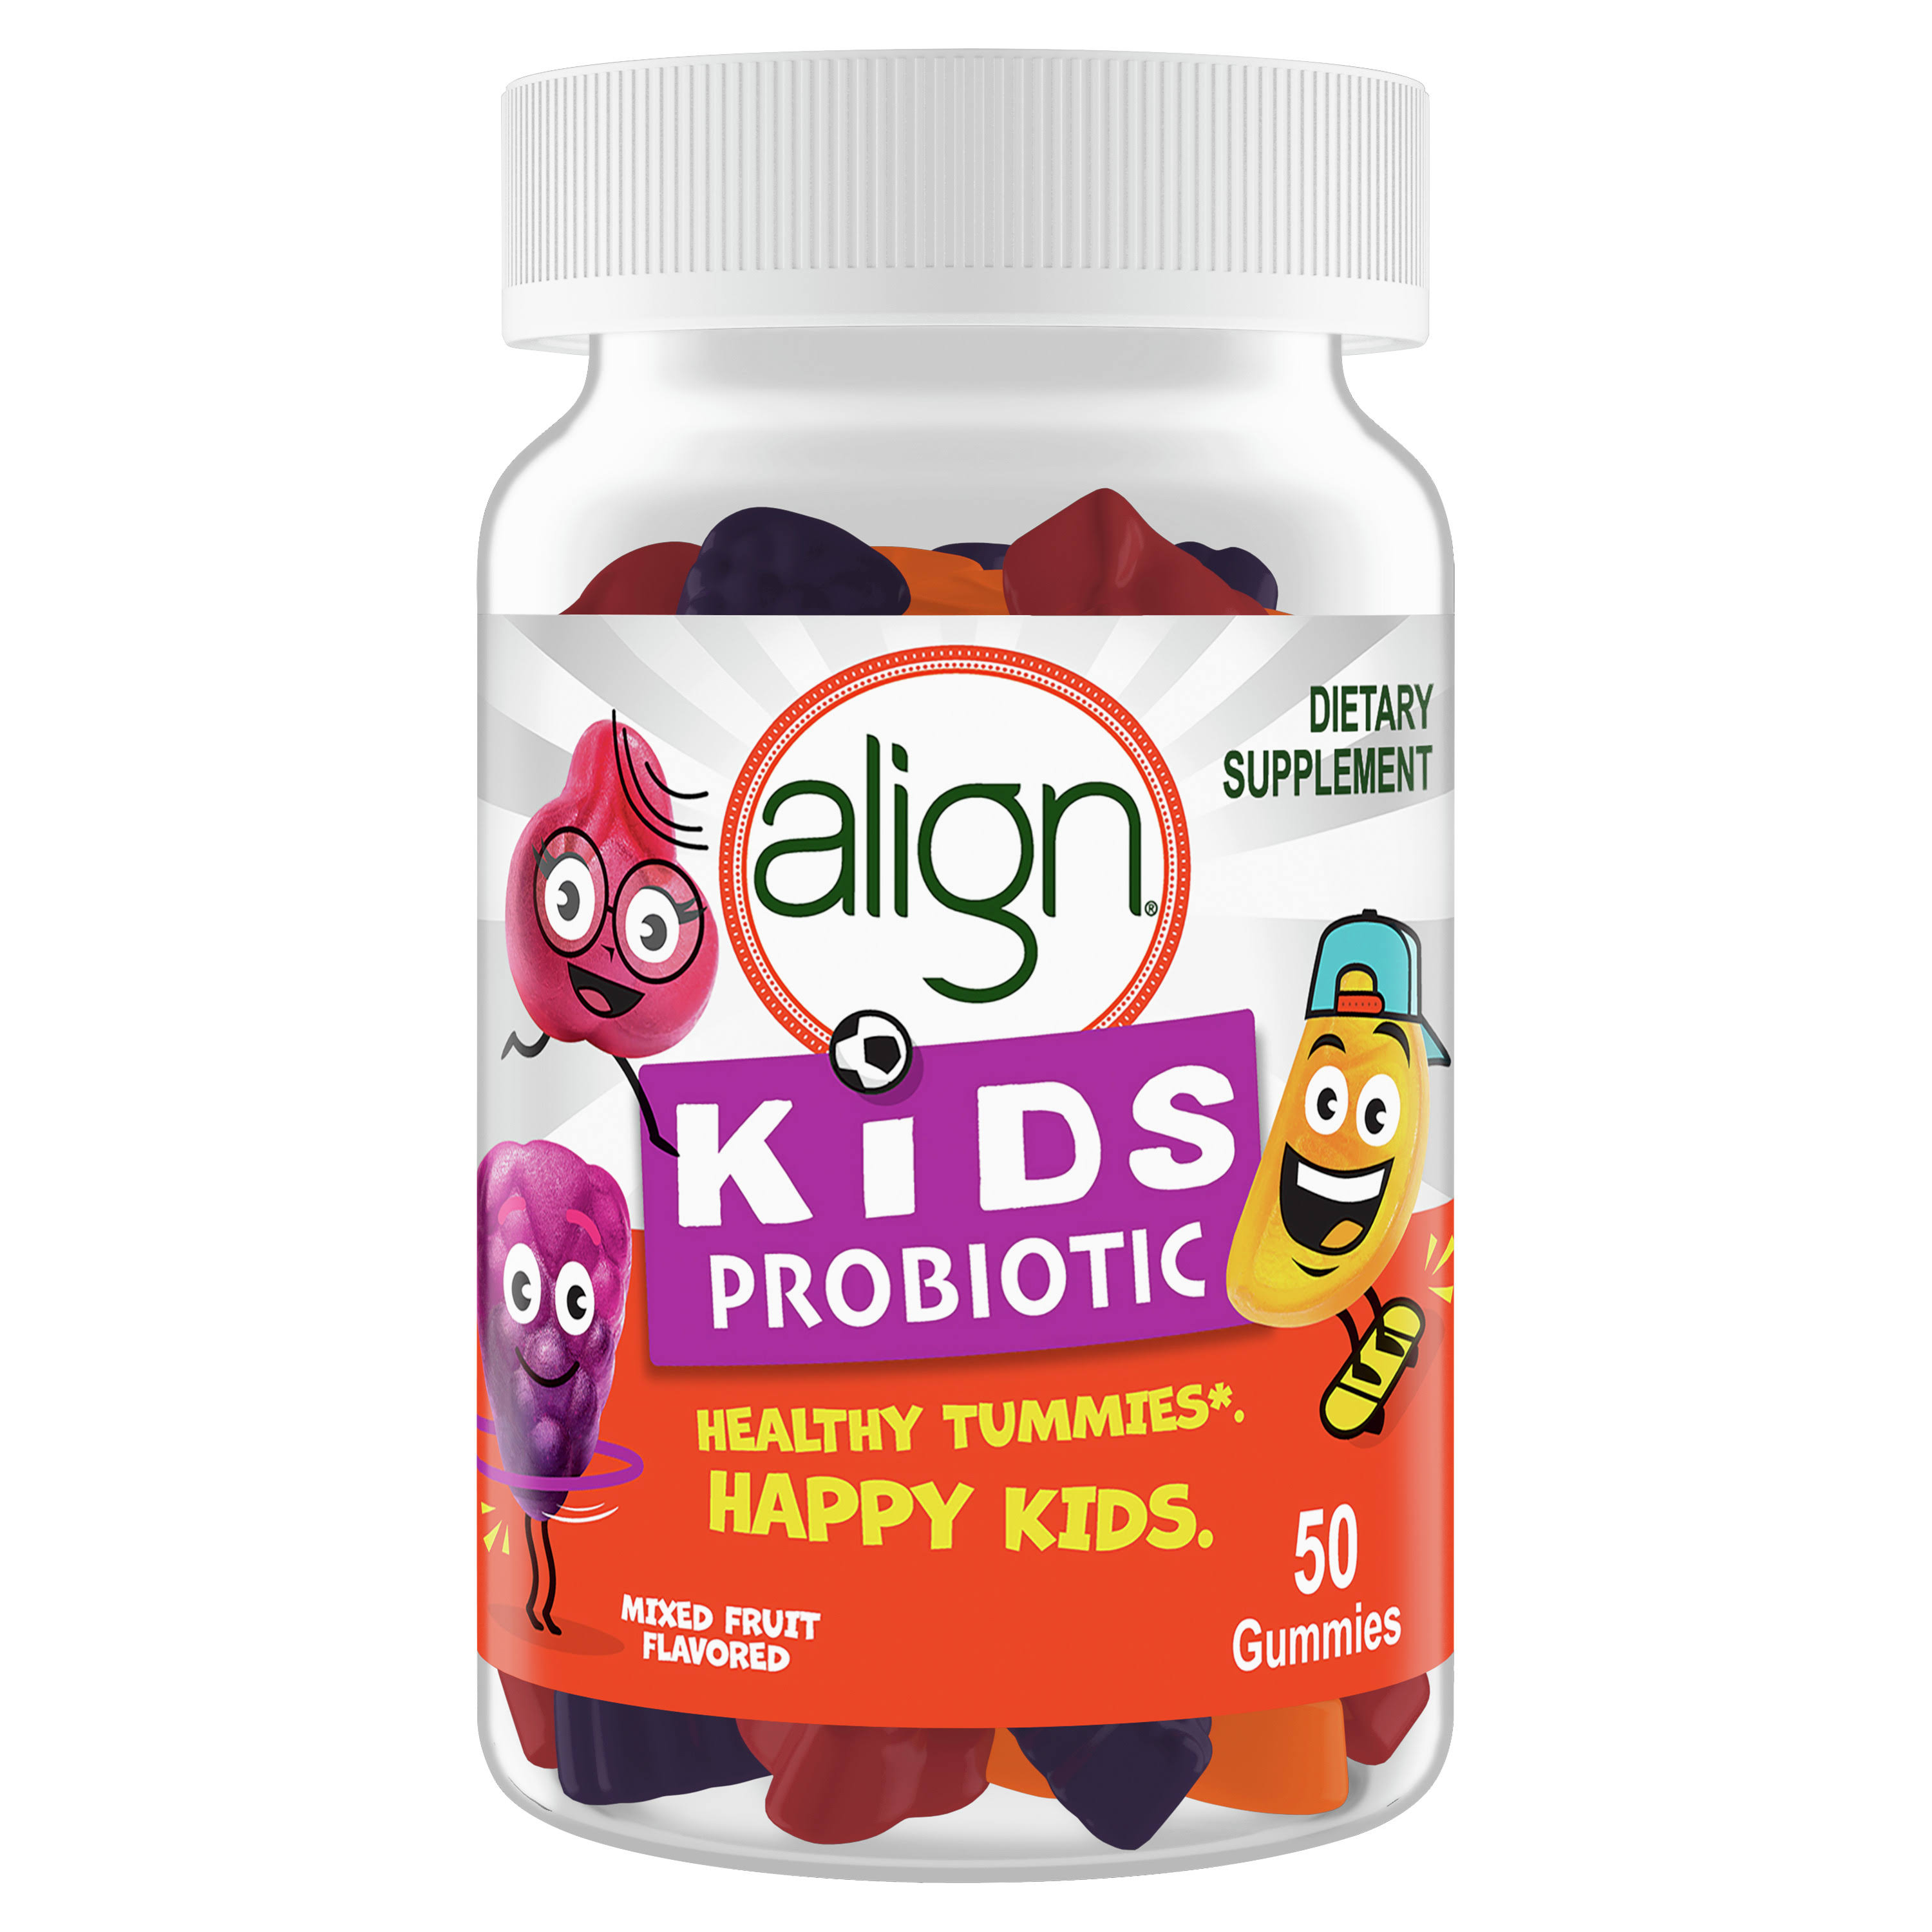 Kid's Probiotic Mixed Fruit Flavor 50 Gummies